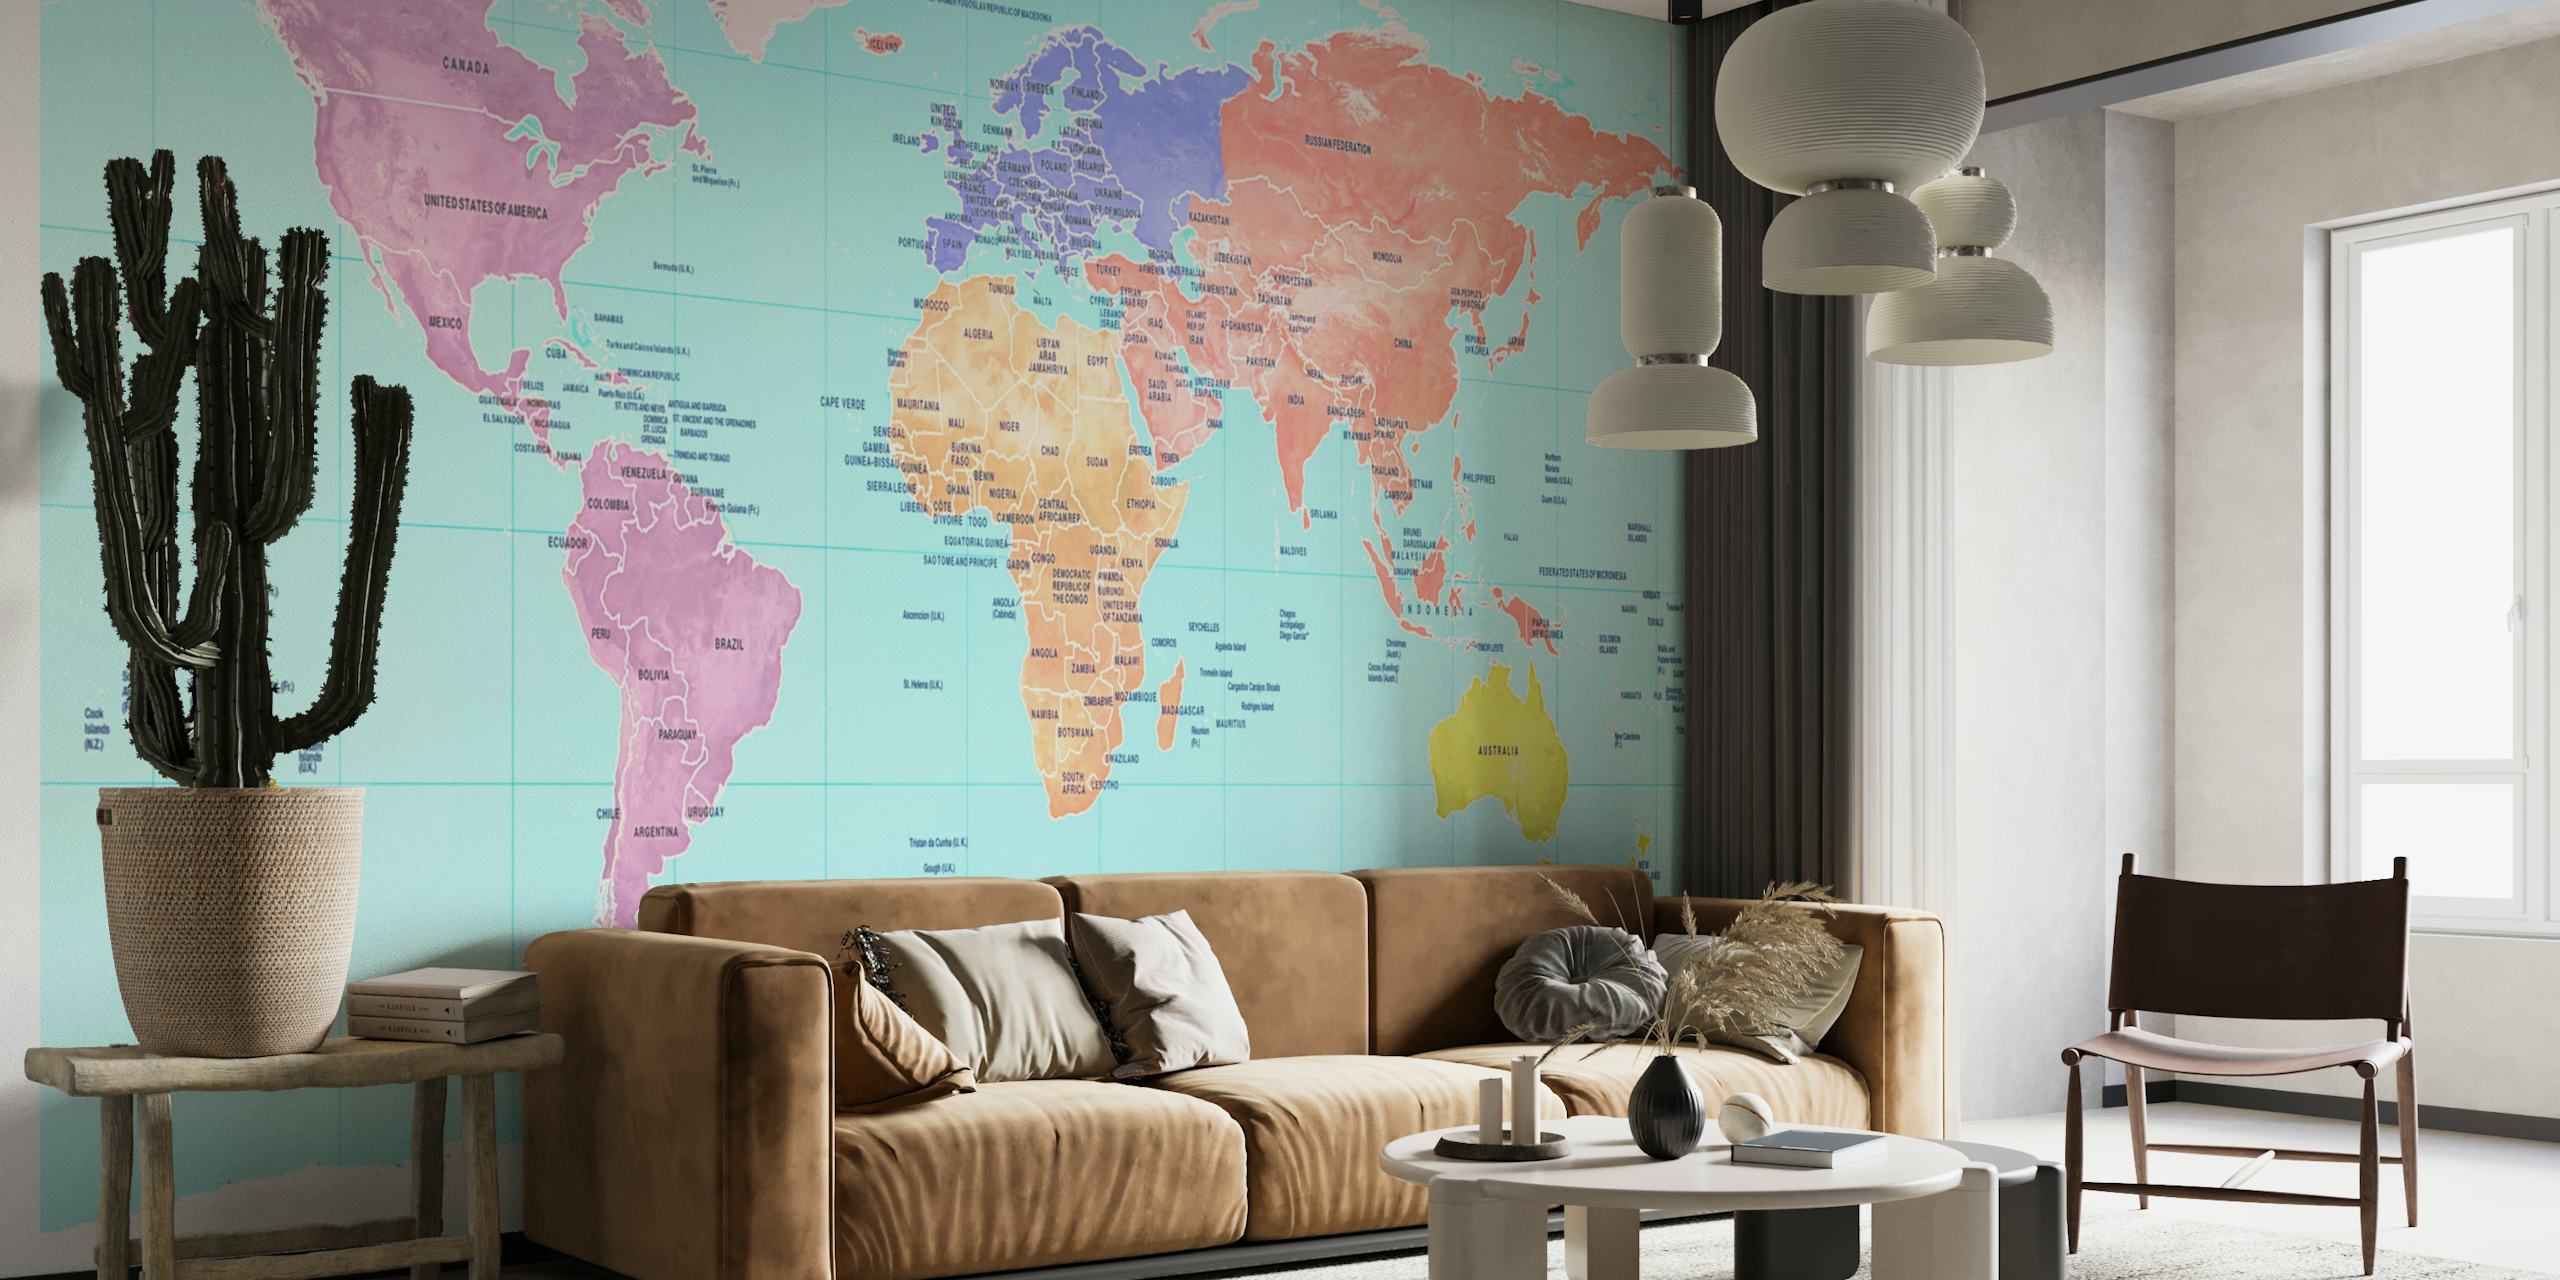 Šarena zidna slika s kartom svijeta koja prikazuje kontinente u različitim nijansama